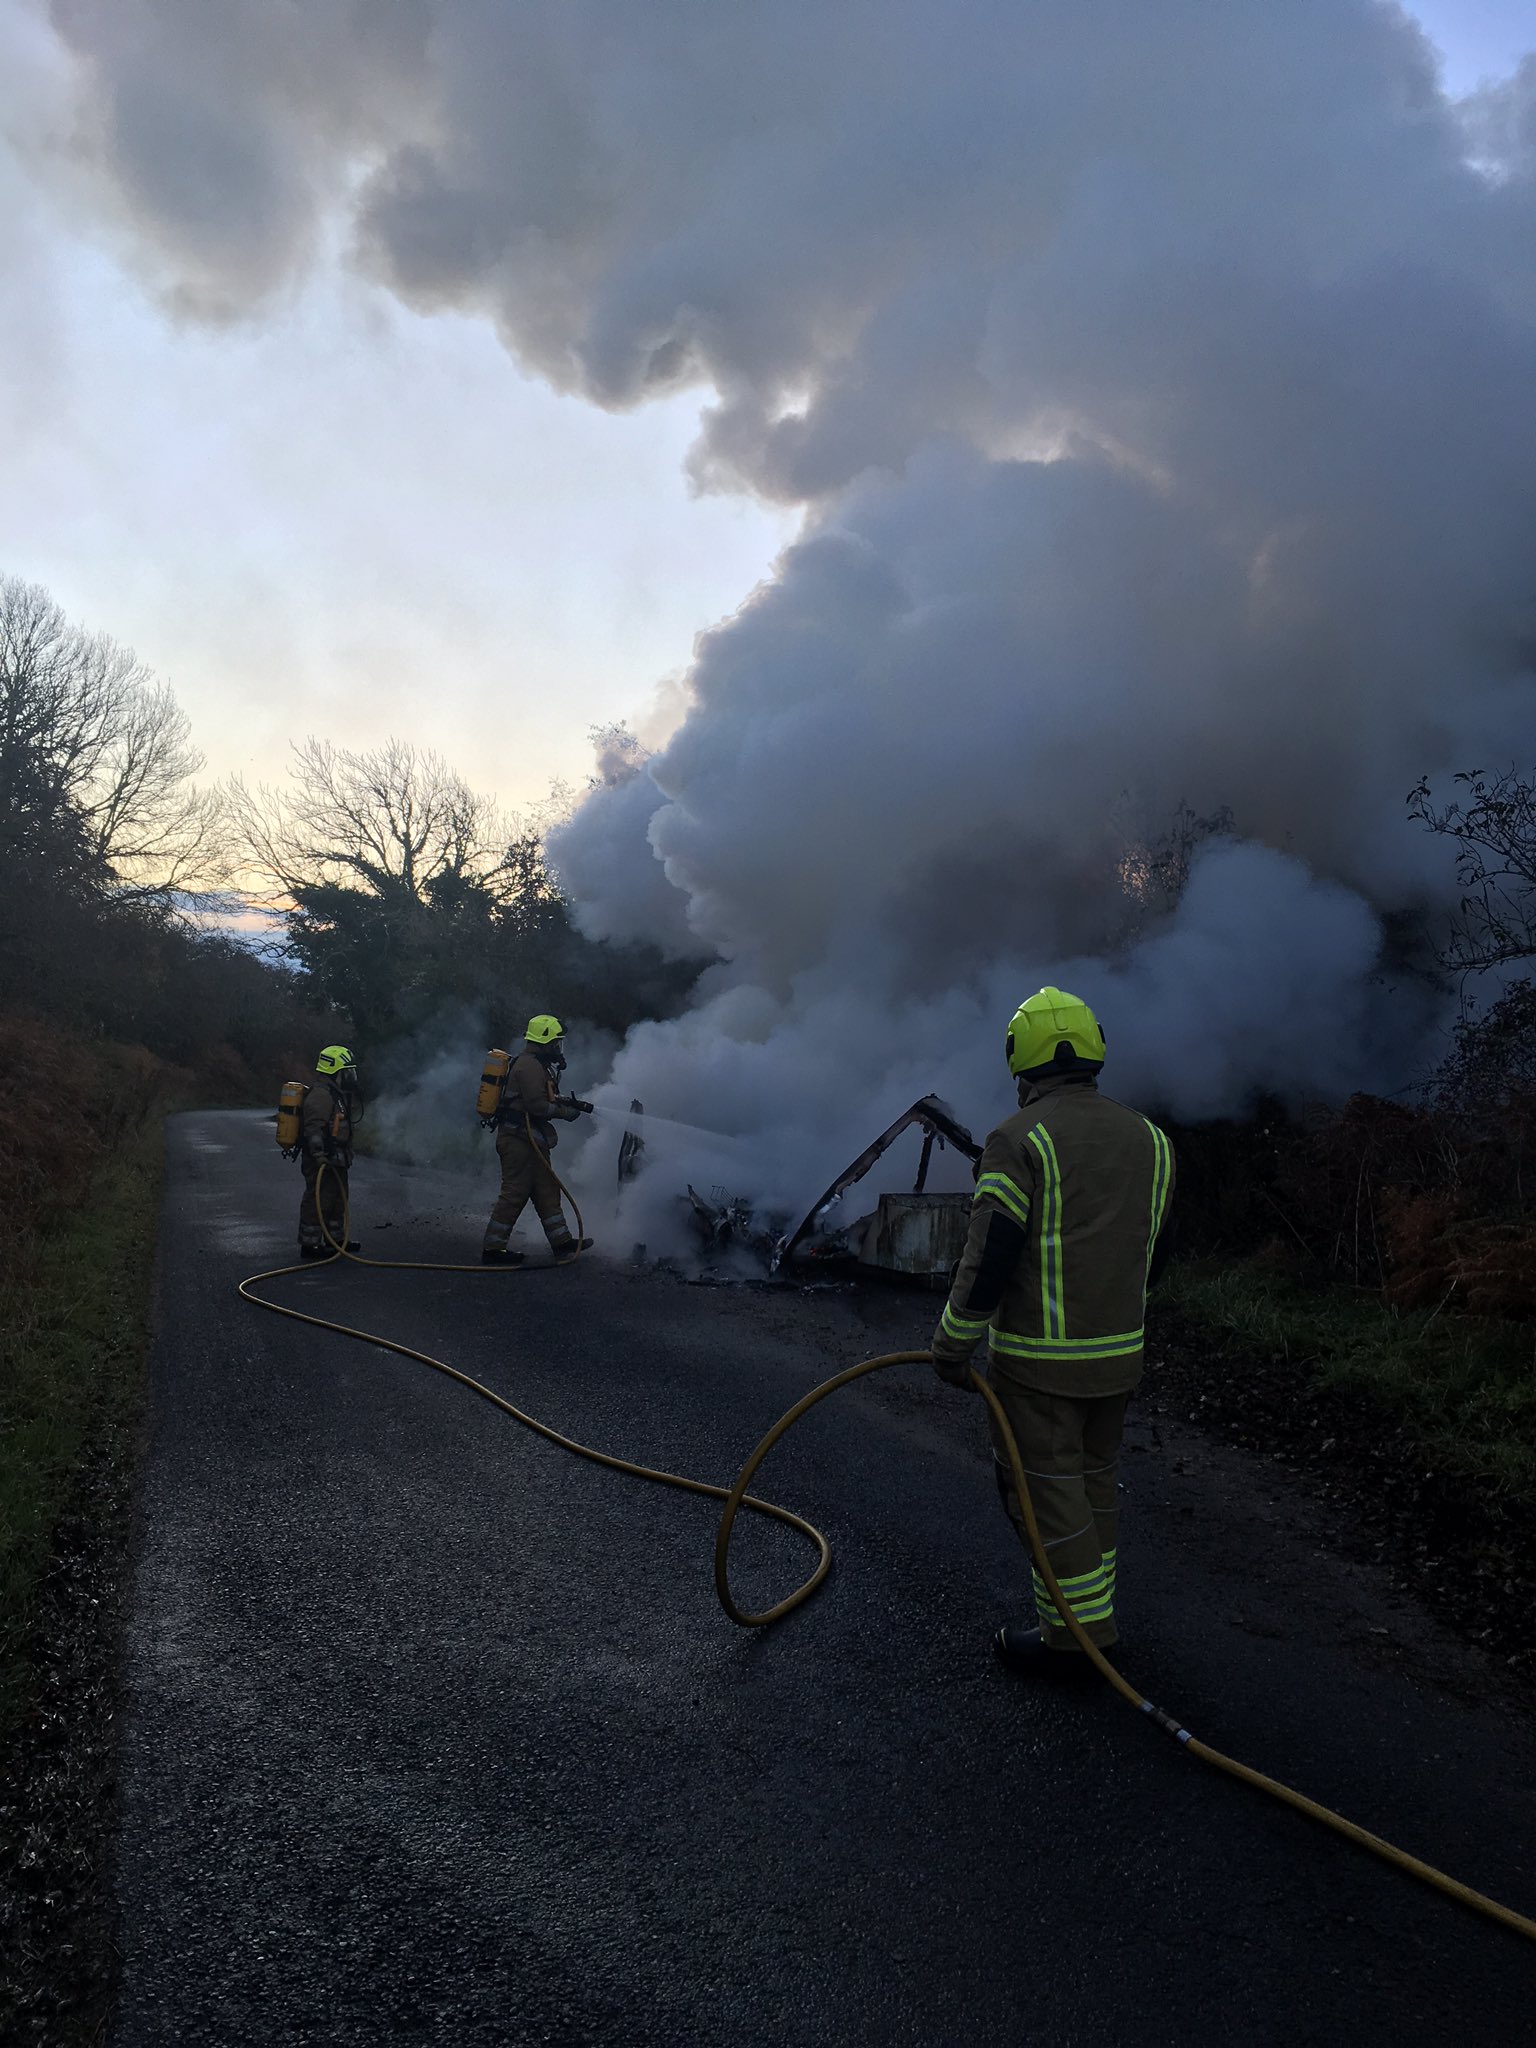 A caravan was found ablaze in Invergordon earlier today.